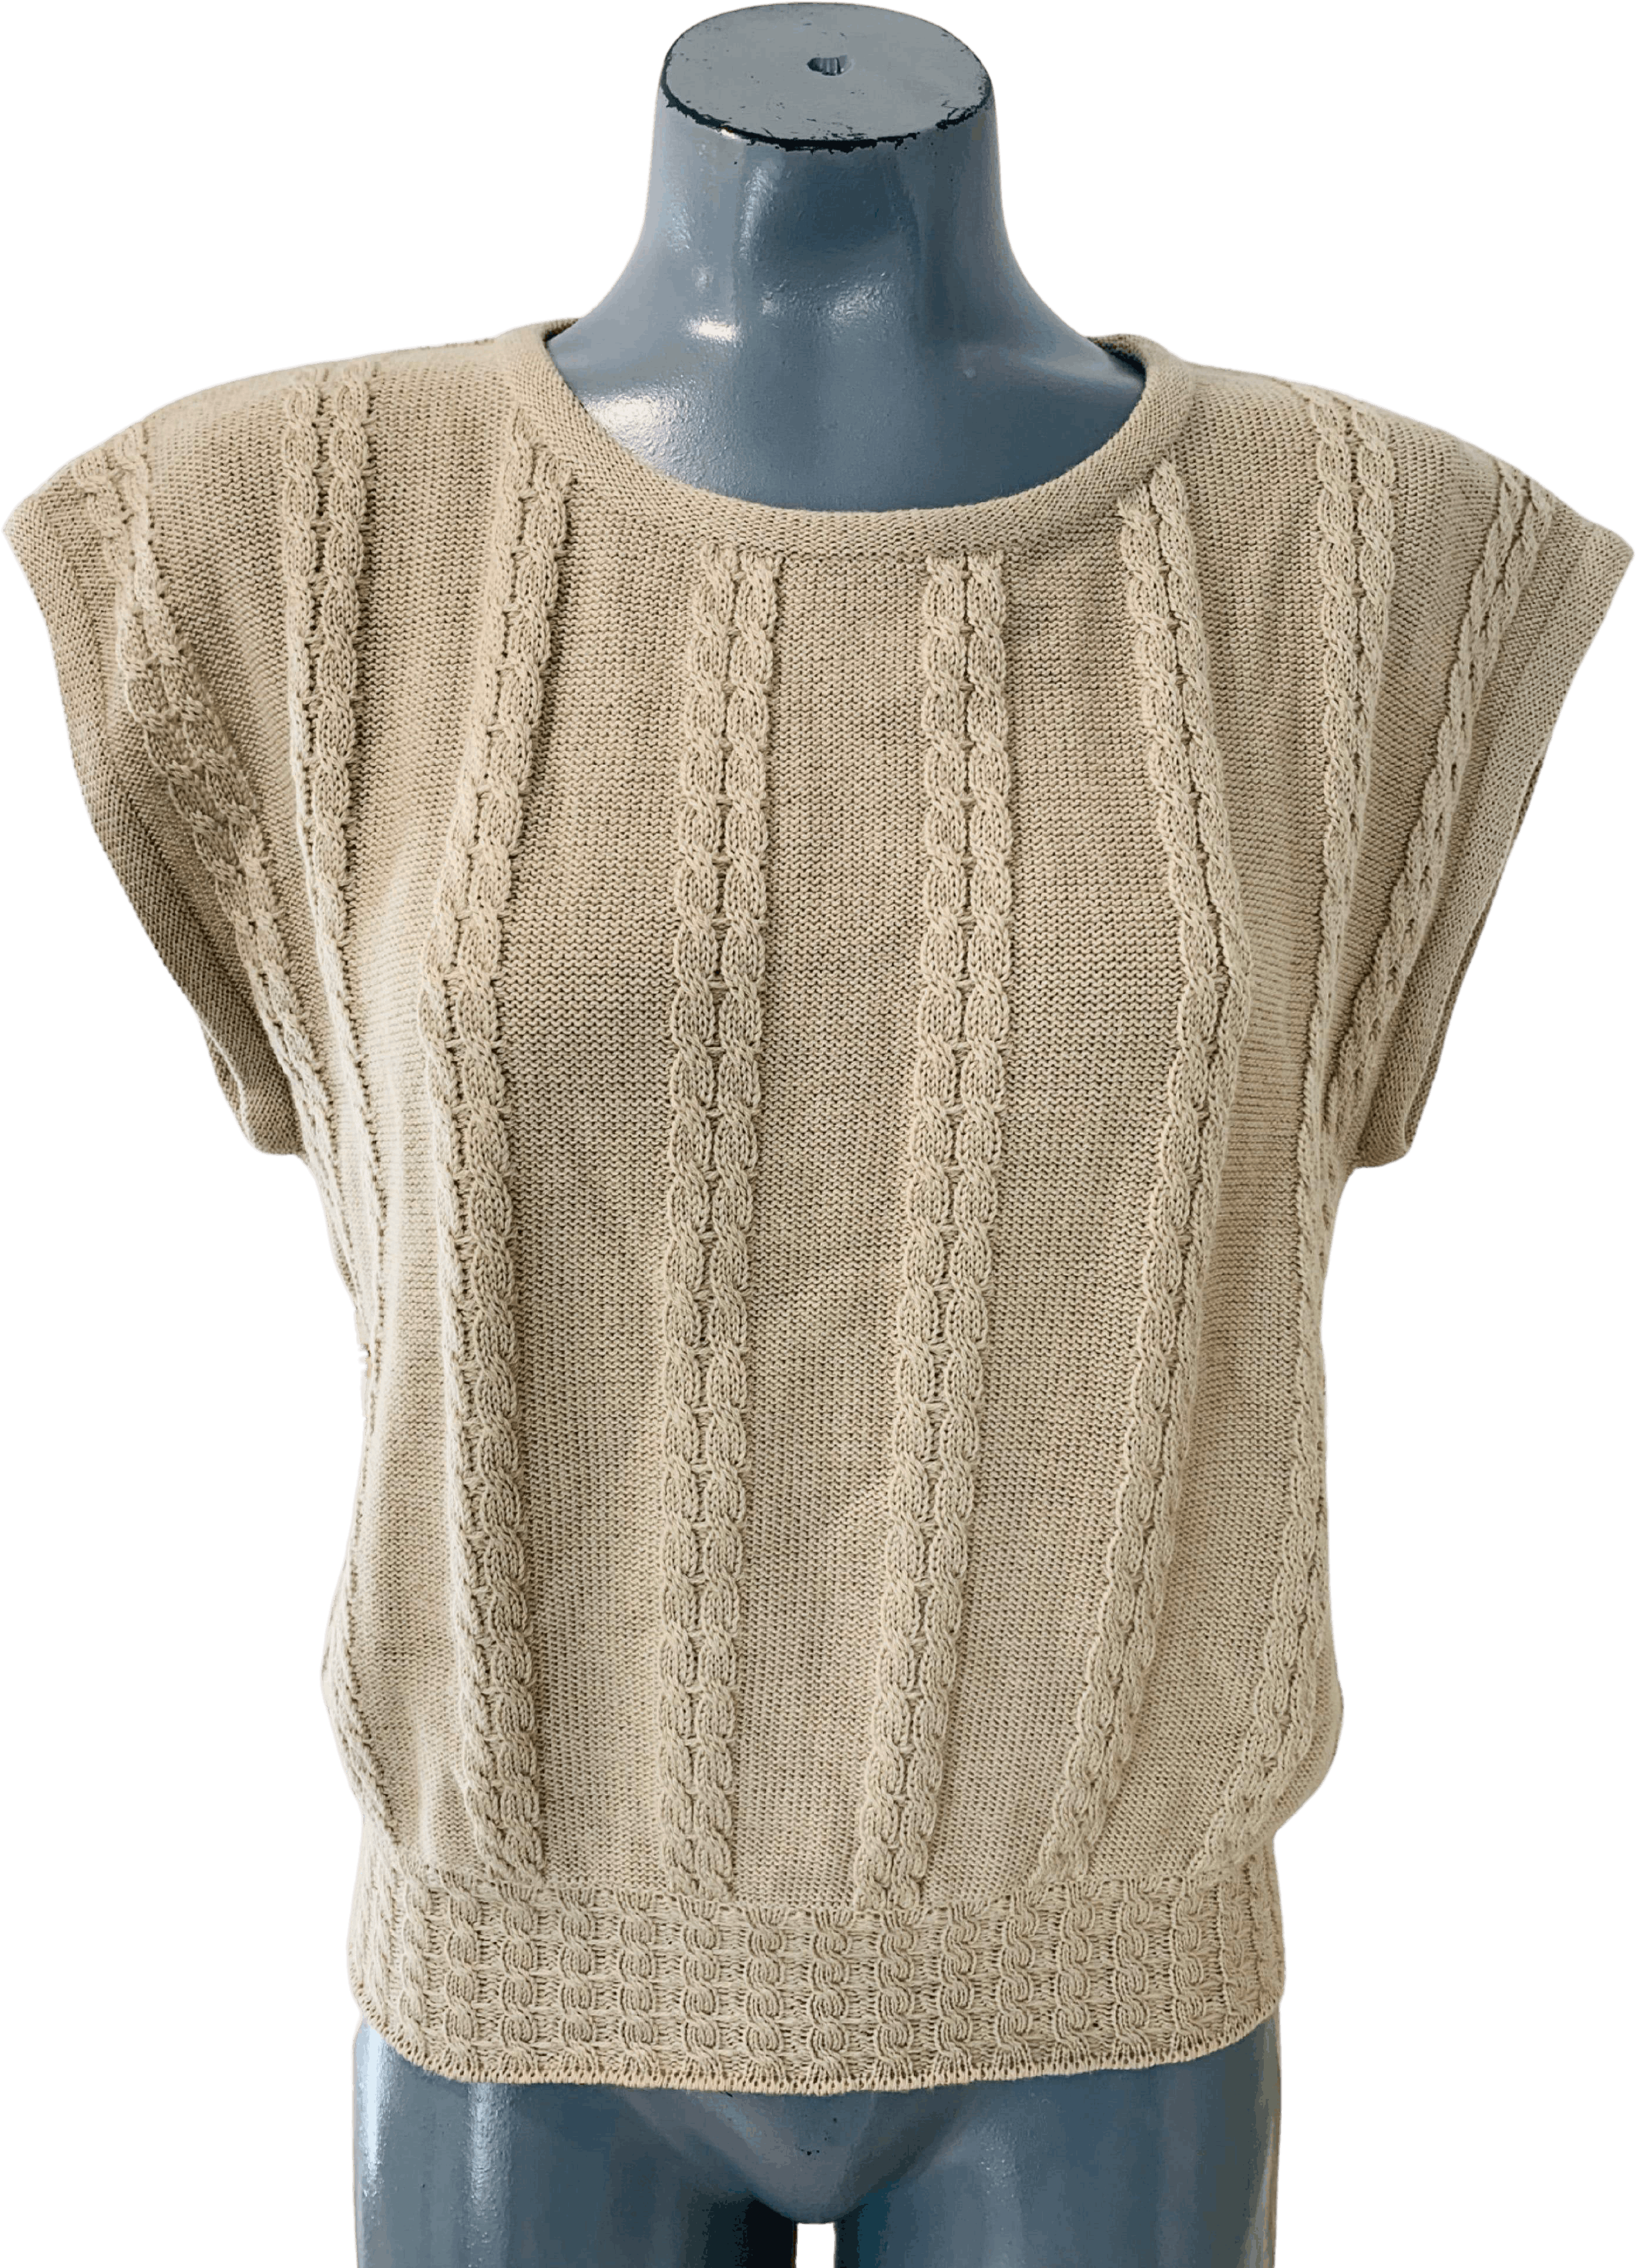 80s Salvatore Ferragamo vintage knit 【正規販売店】 www